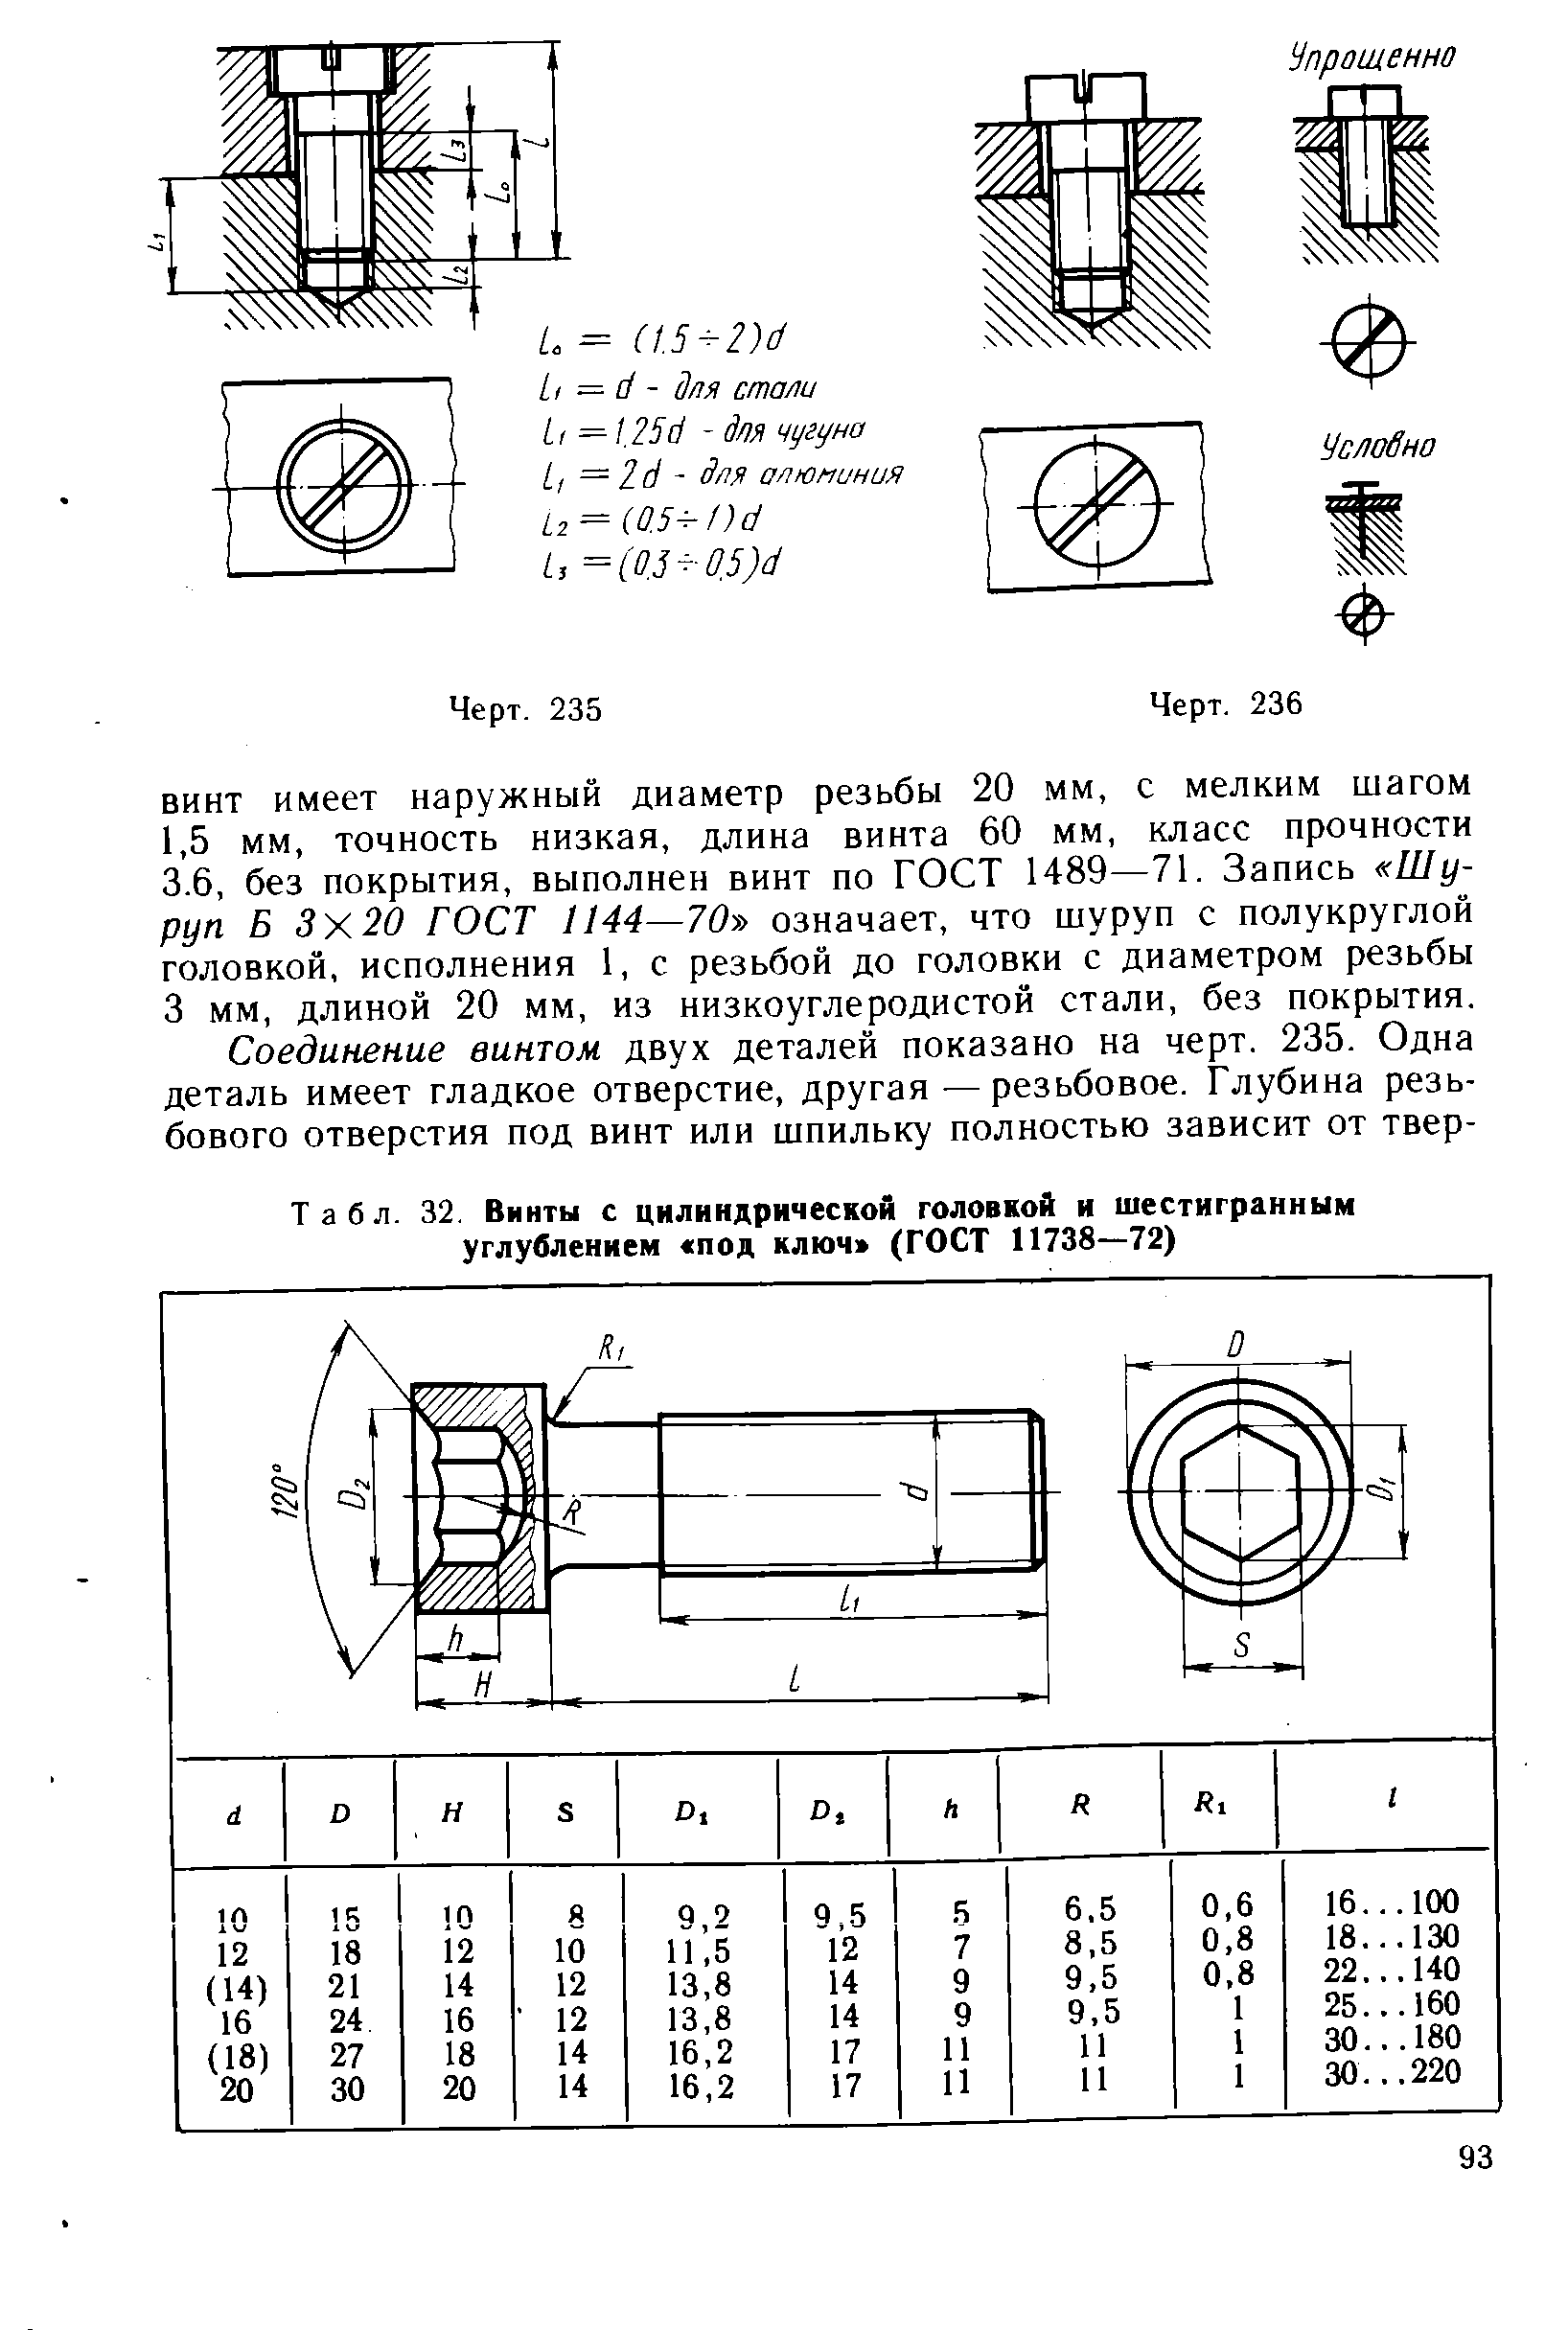 Табл. 32. Винты с цилиндрической головкой и шестигранным углублением под ключ (ГОСТ 11738—72)
